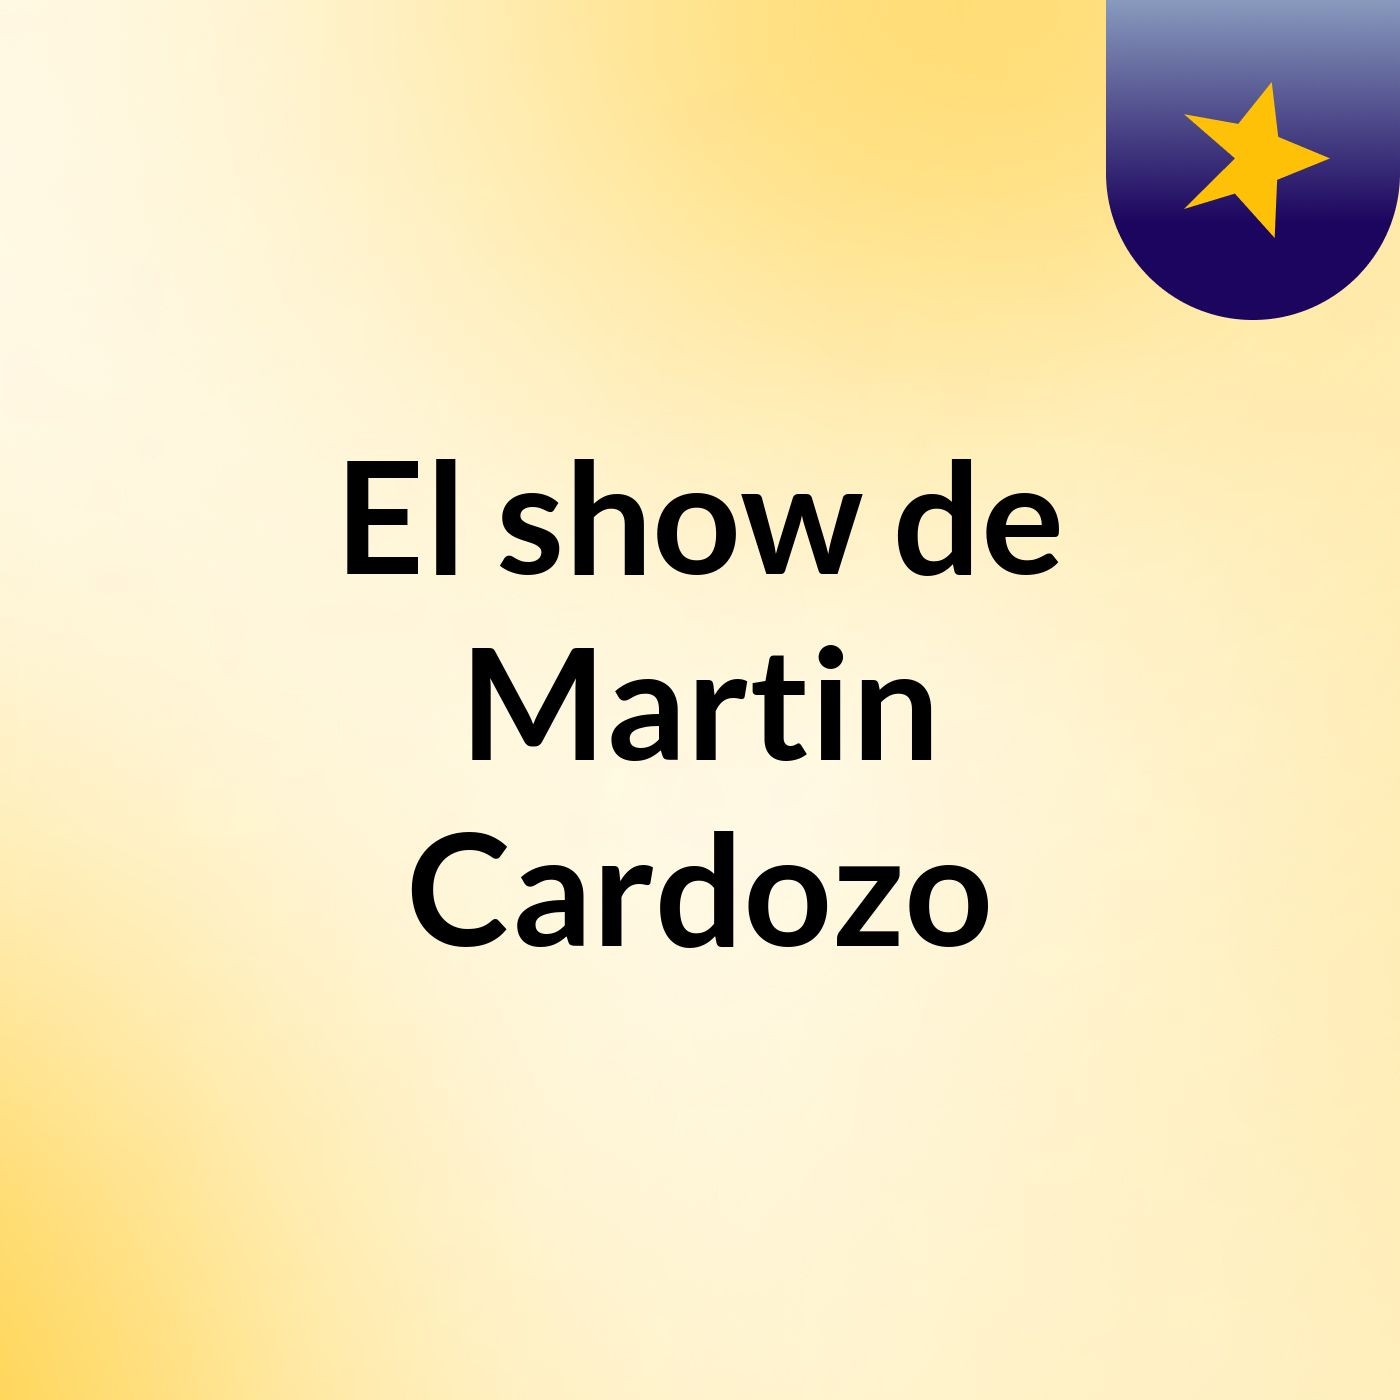 El show de Martin Cardozo